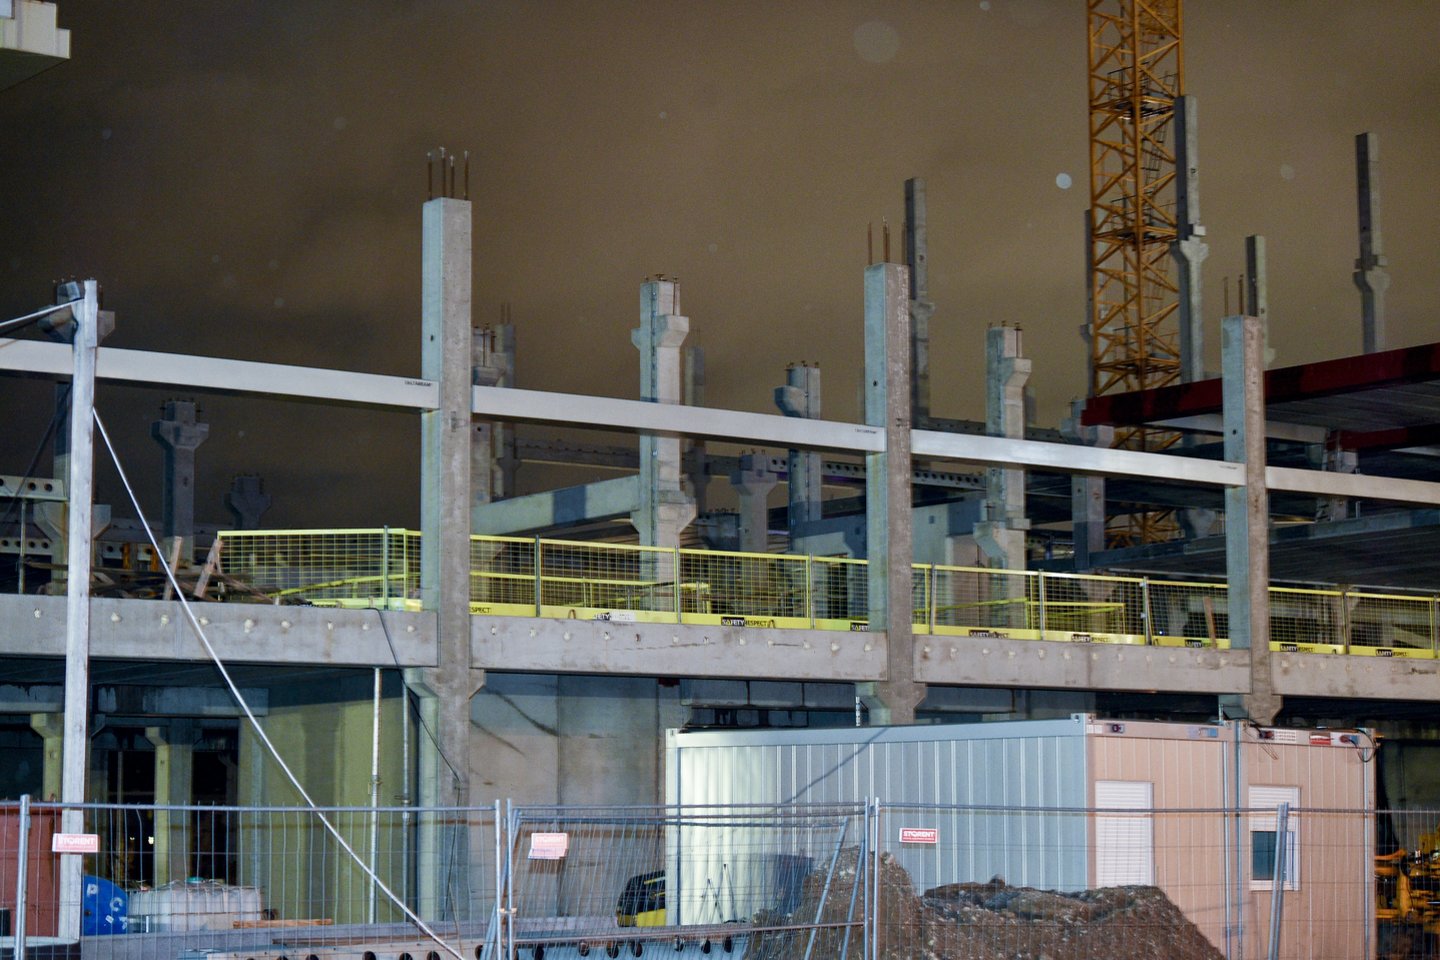 Valstybinė teritorijų planavimo ir statybos inspekcija pradėjo tirti sausio 14 d. Vilniuje, Mokslininkų g. 6 įvykusią statomo mokslo paskirties pastato avariją.<br>V.Ščiavinsko nuotr.